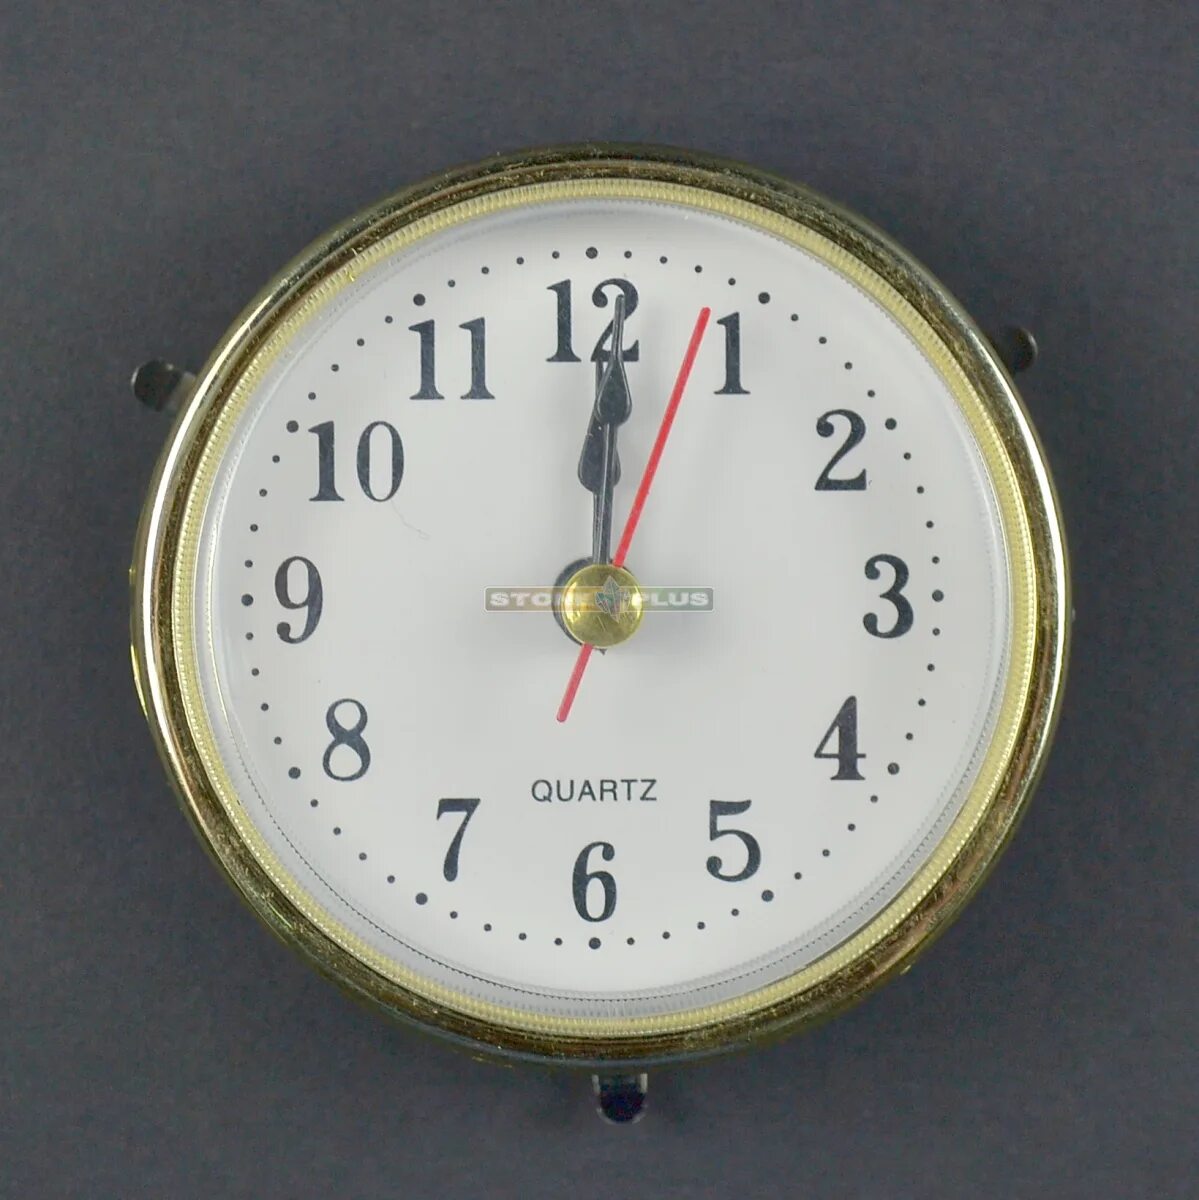 5 33 на часах. Круглый часовой механизм ostar 6304 Quartz. Кварцевый часовой механизм м2188. Встраиваемый часовой механизм для настольных часов. Часовая капсула встраиваемые.